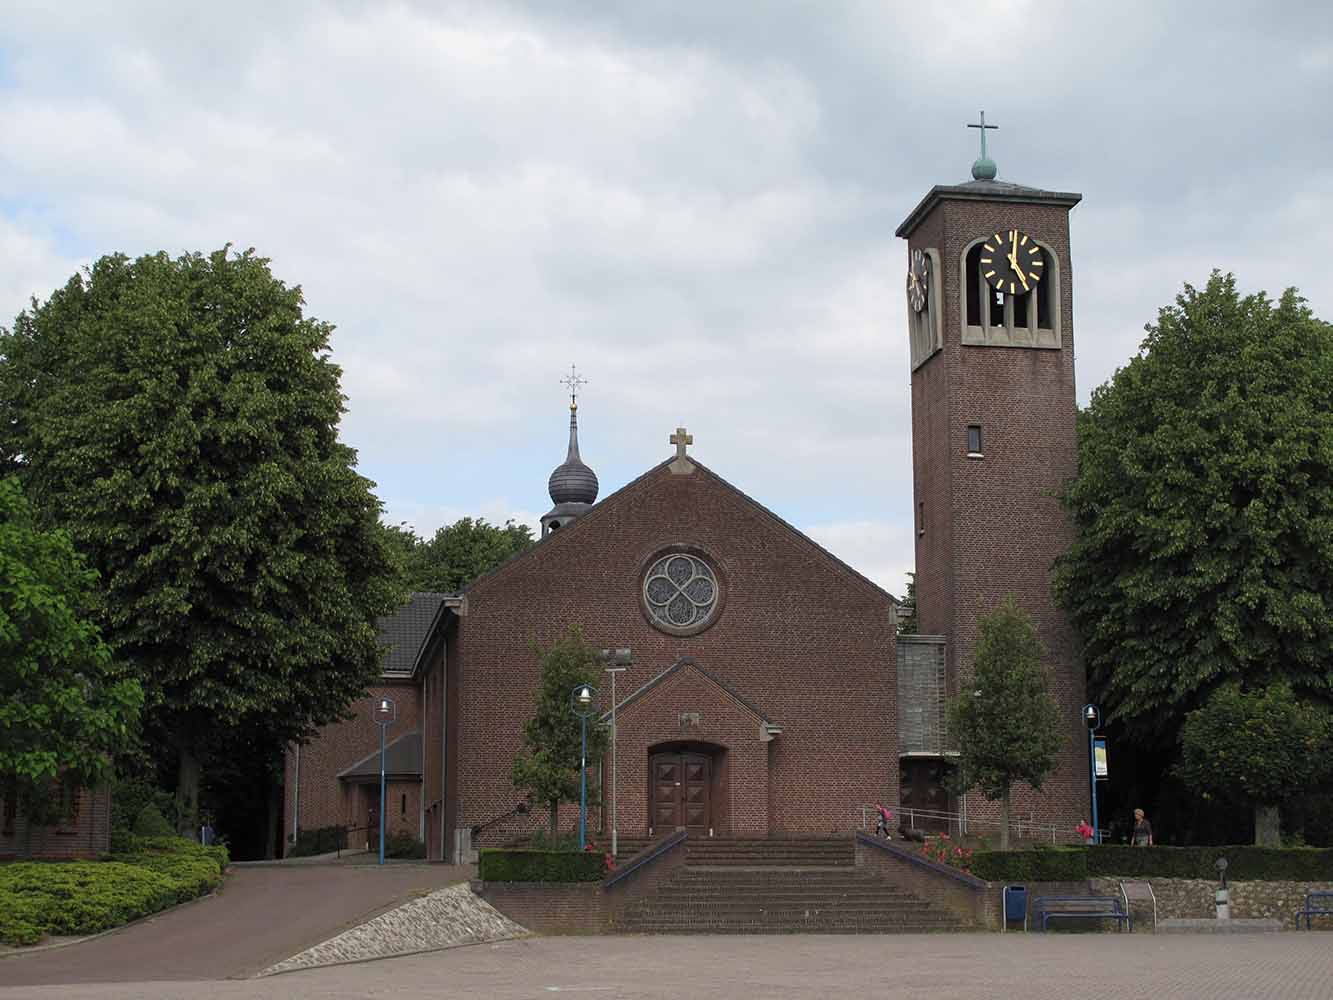 Sint Catharinakerk Wellerlooi